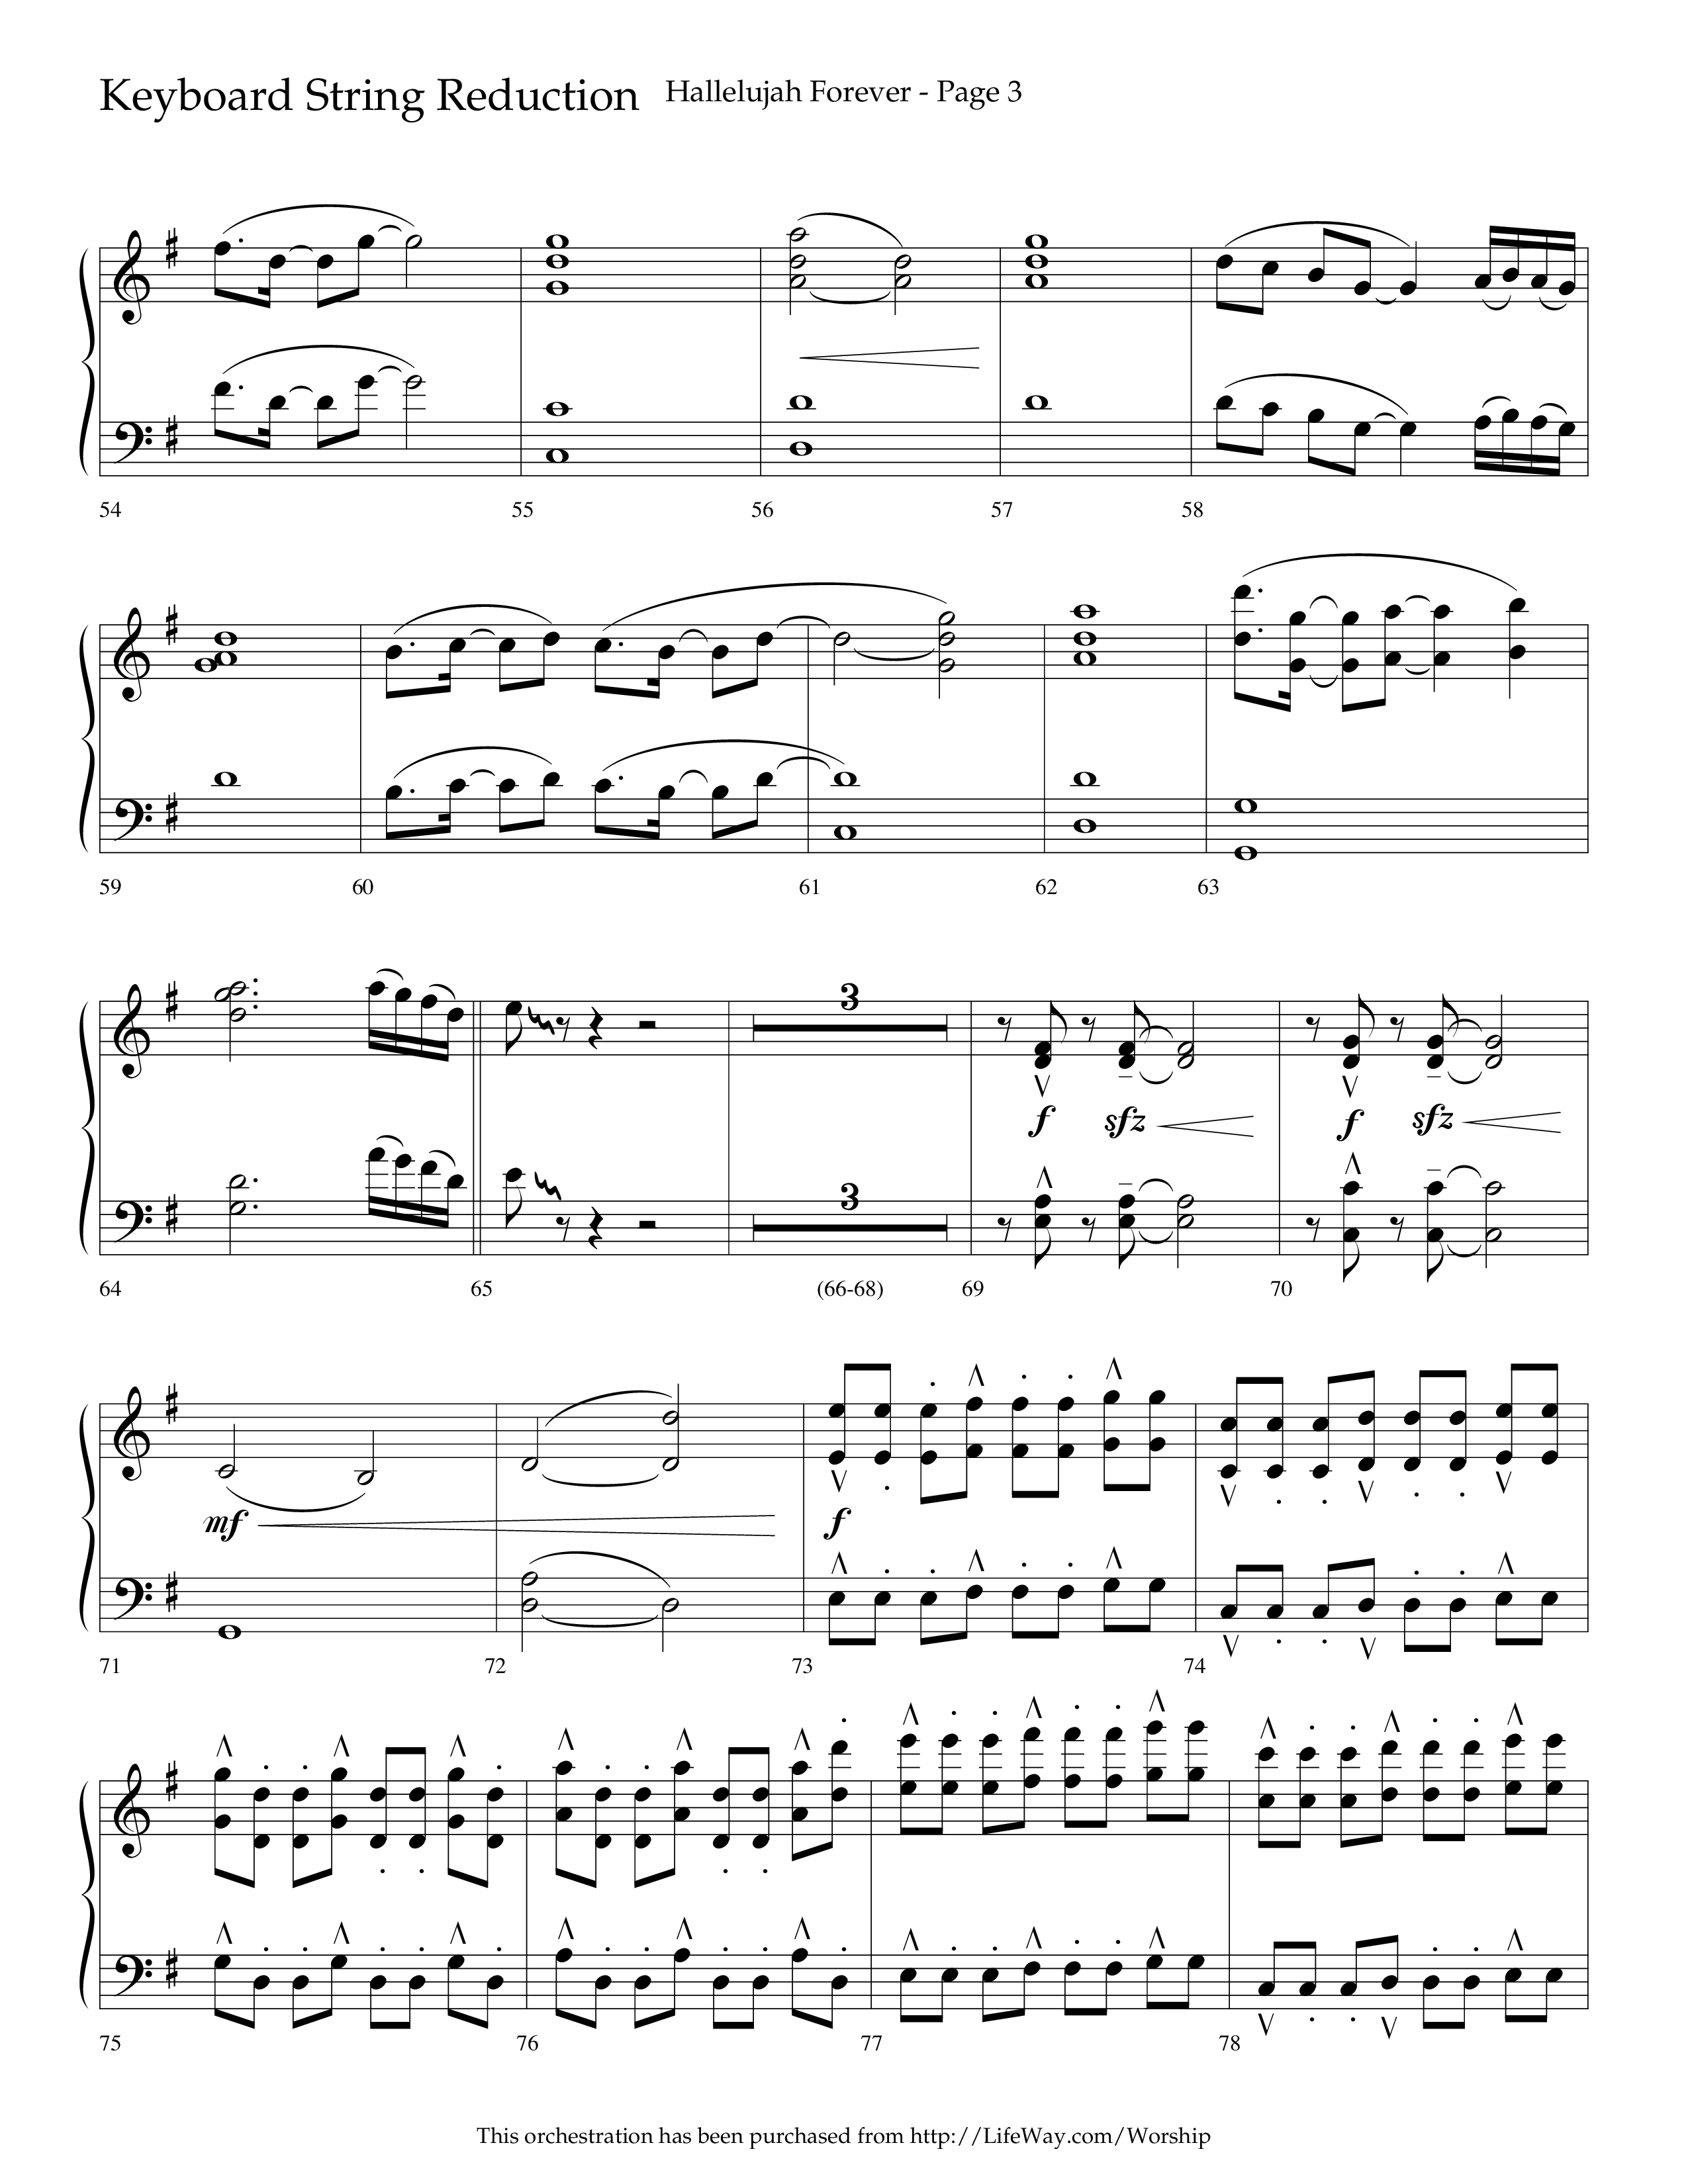 Hallelujah Forever (Choral Anthem SATB) String Reduction (Lifeway Choral / Arr. Cliff Duren)